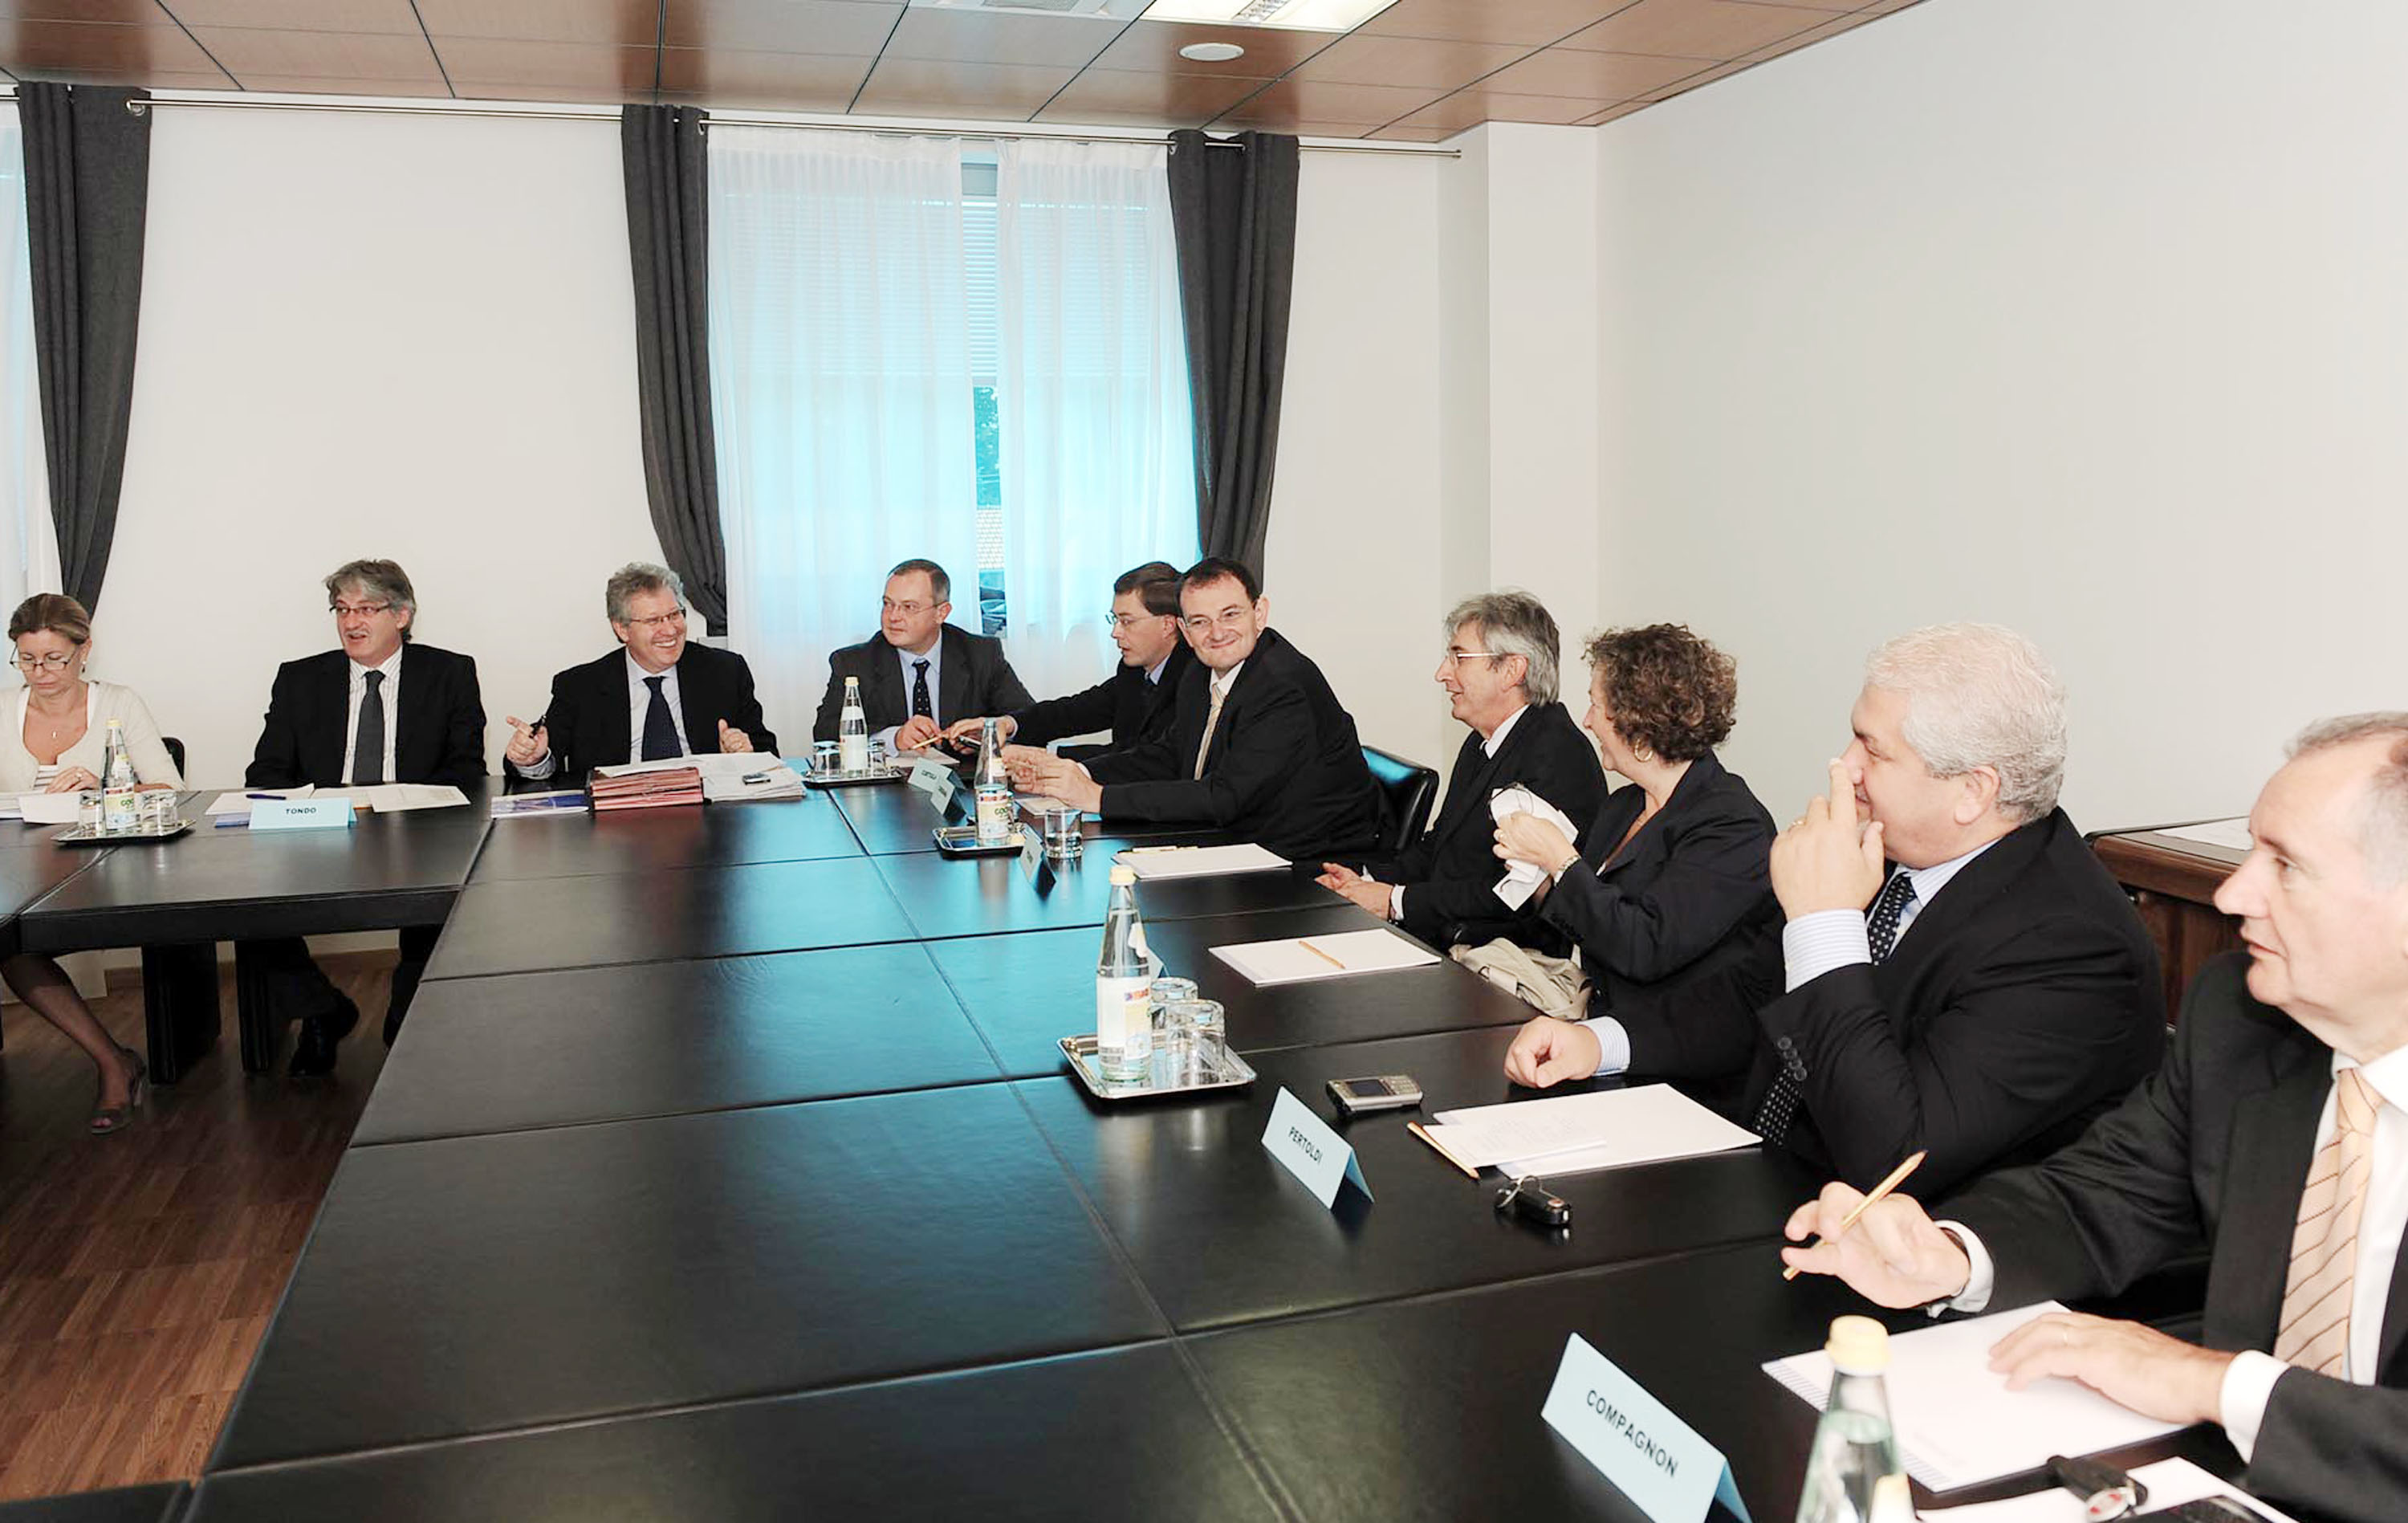 Il tavolo dell'incontro tra il presidente del Friuli Venezia Giulia Renzo Tondo e i parlamentari eletti per il FVG nella XVI legislatura della Repubblica italiana. (Udine 25/09/09)  